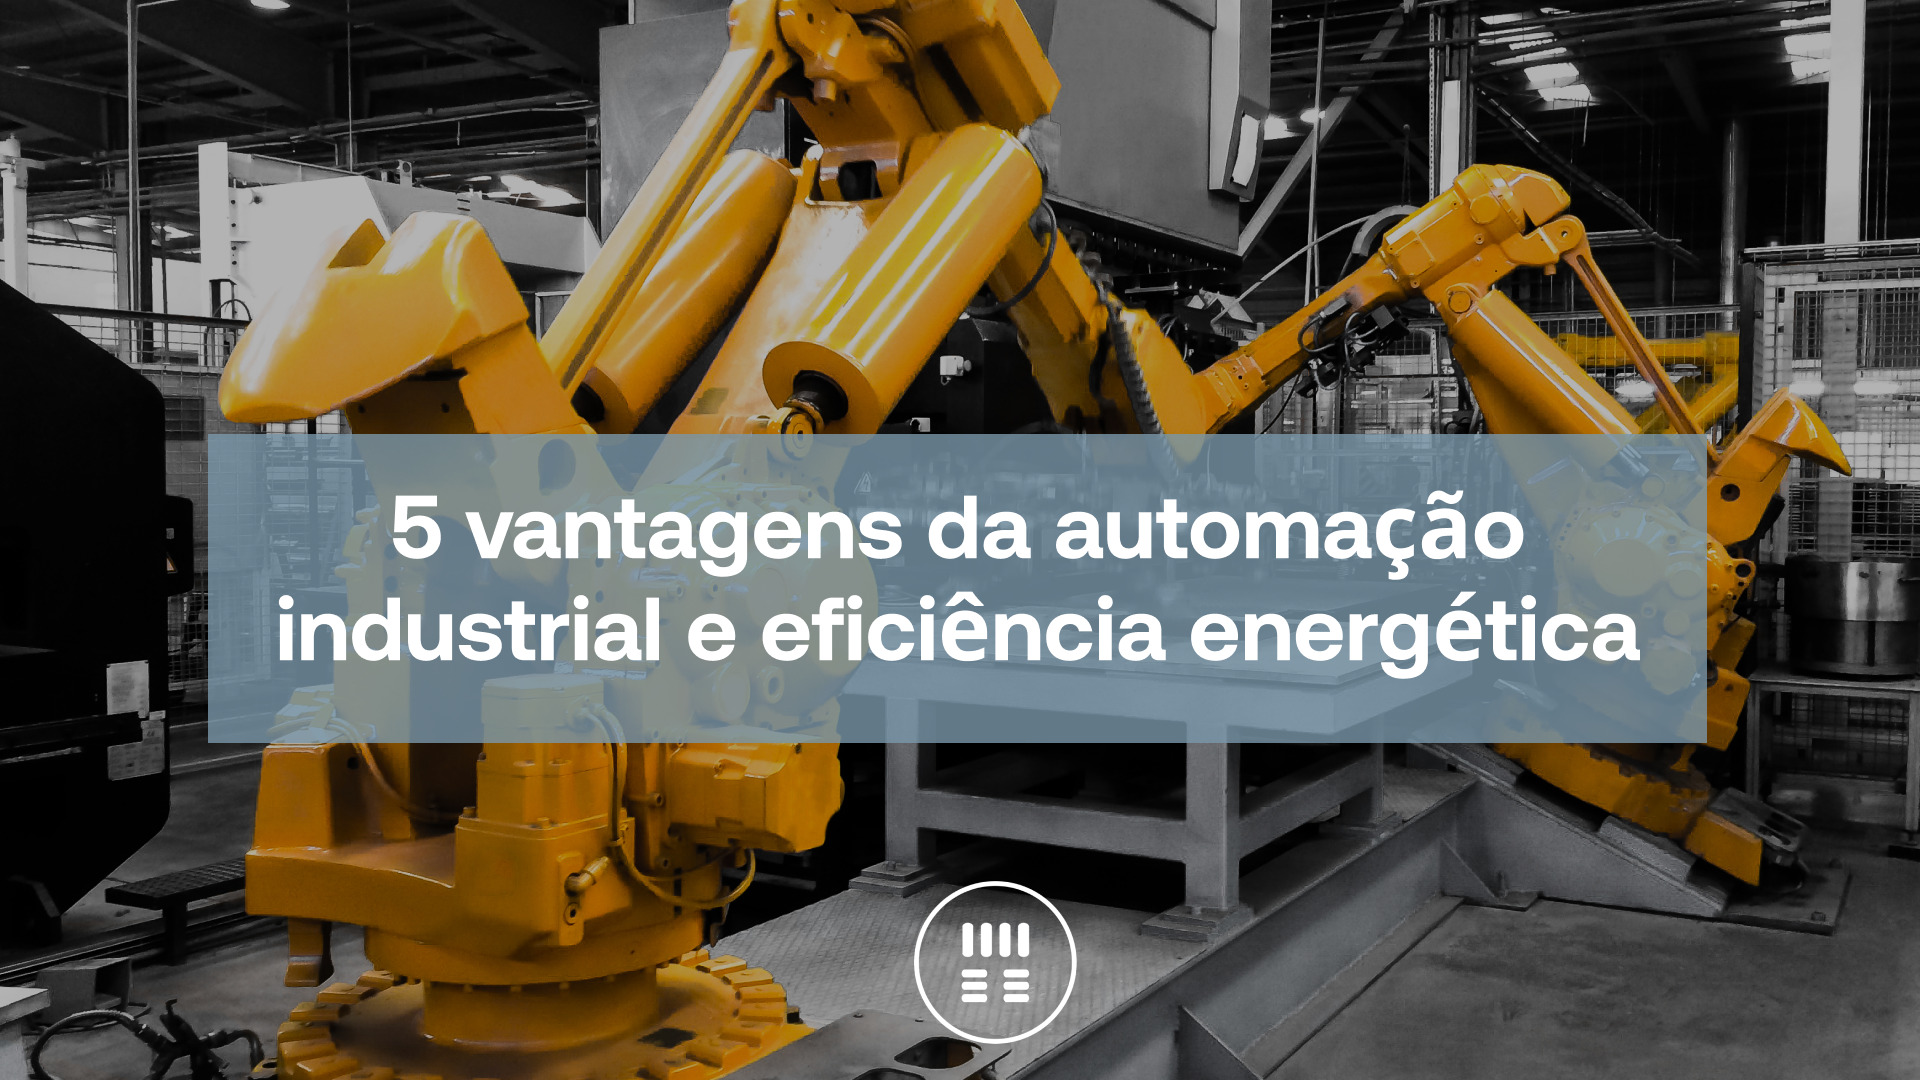 5 vantagens da automação industrial e eficiência energética